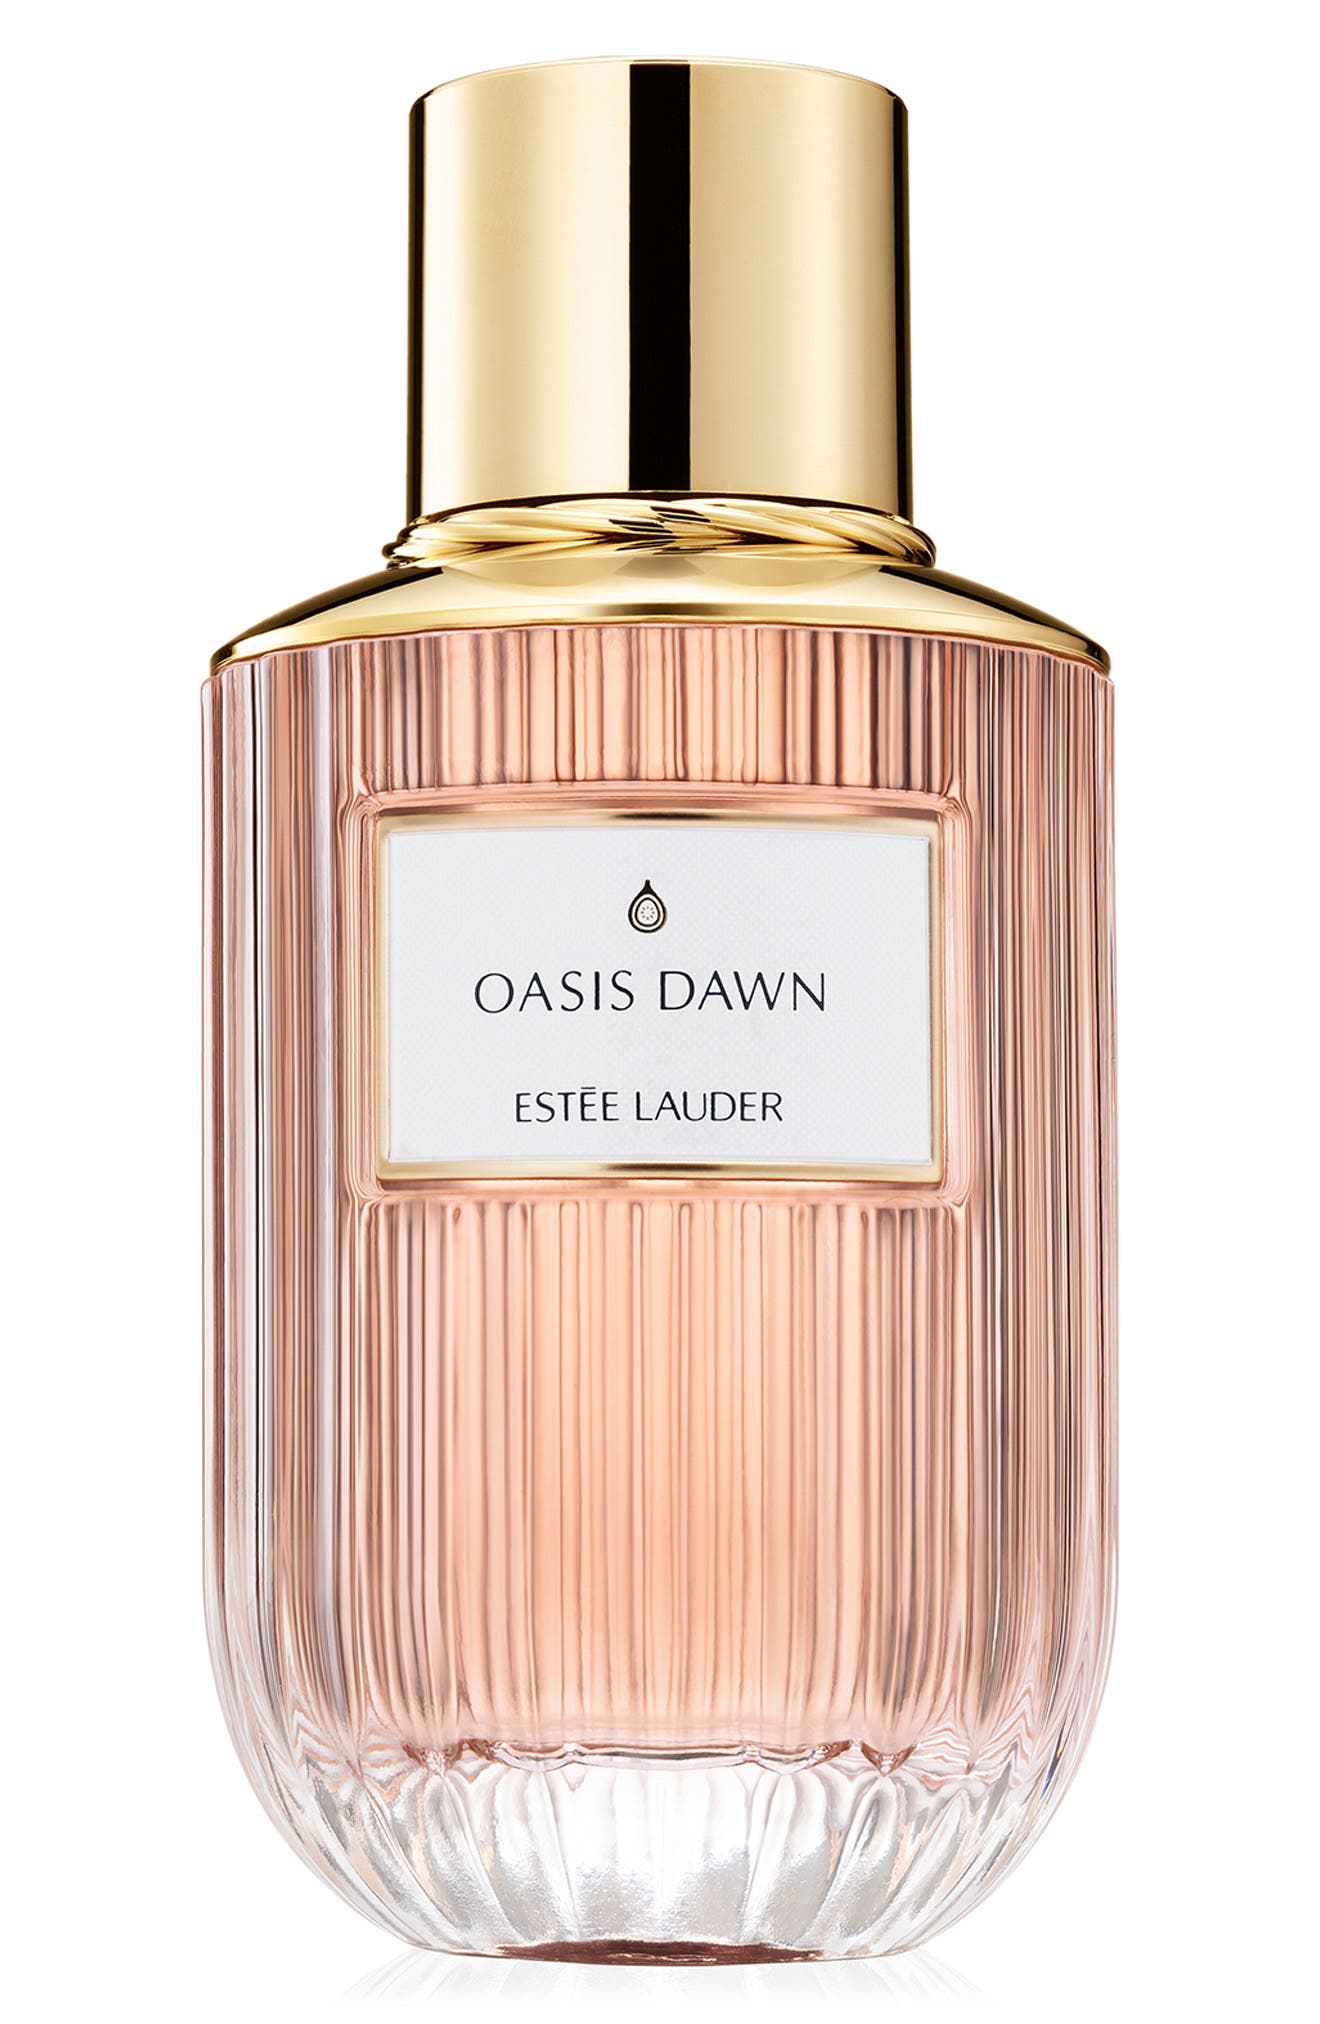 Estee Lauder 3.4 oz. Oasis Dawn Eau de Parfum